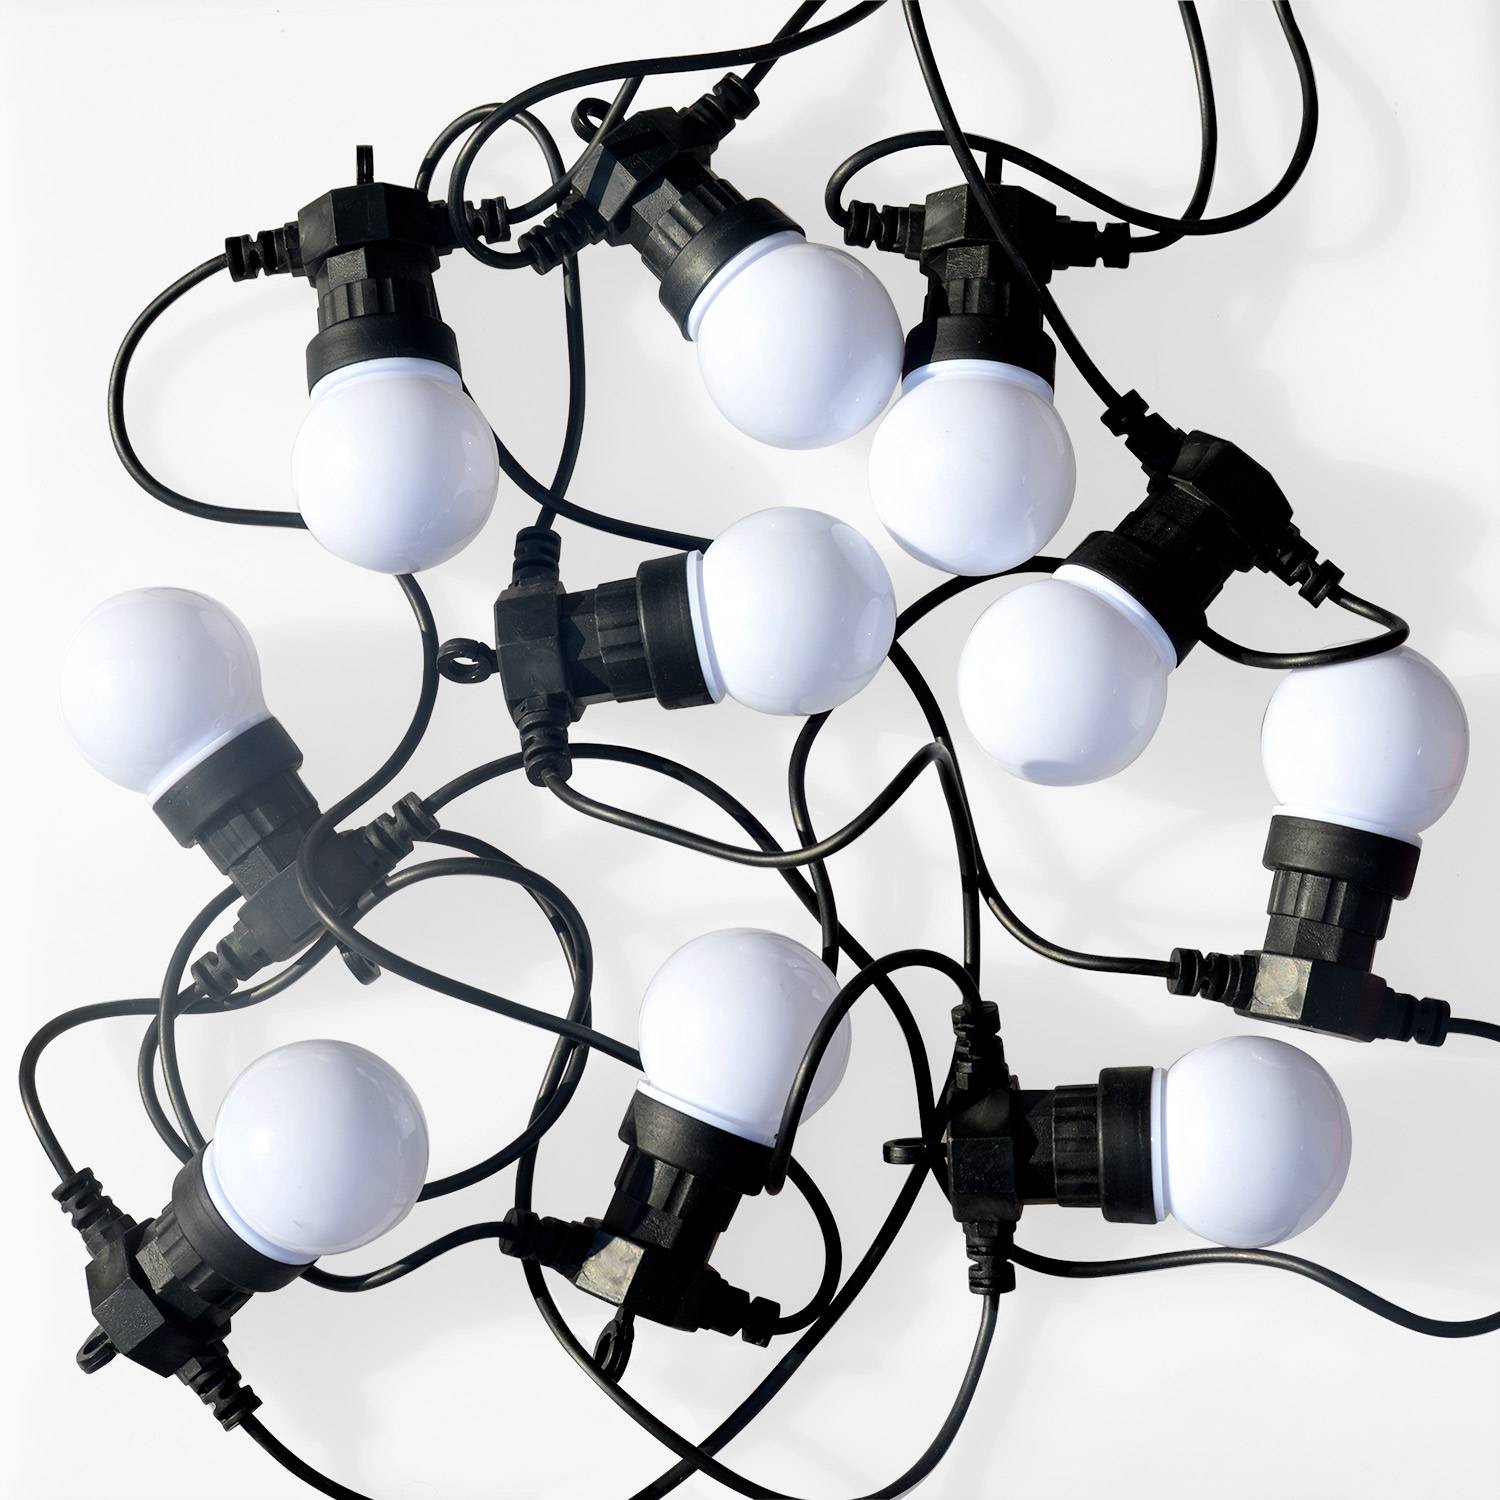 HERACLES - Kerst lichtslinger voor buiten met 10 witte lampen, 50 LED's, op batterijen, timerfunctie, 8 modi, 4,5m lang Photo2